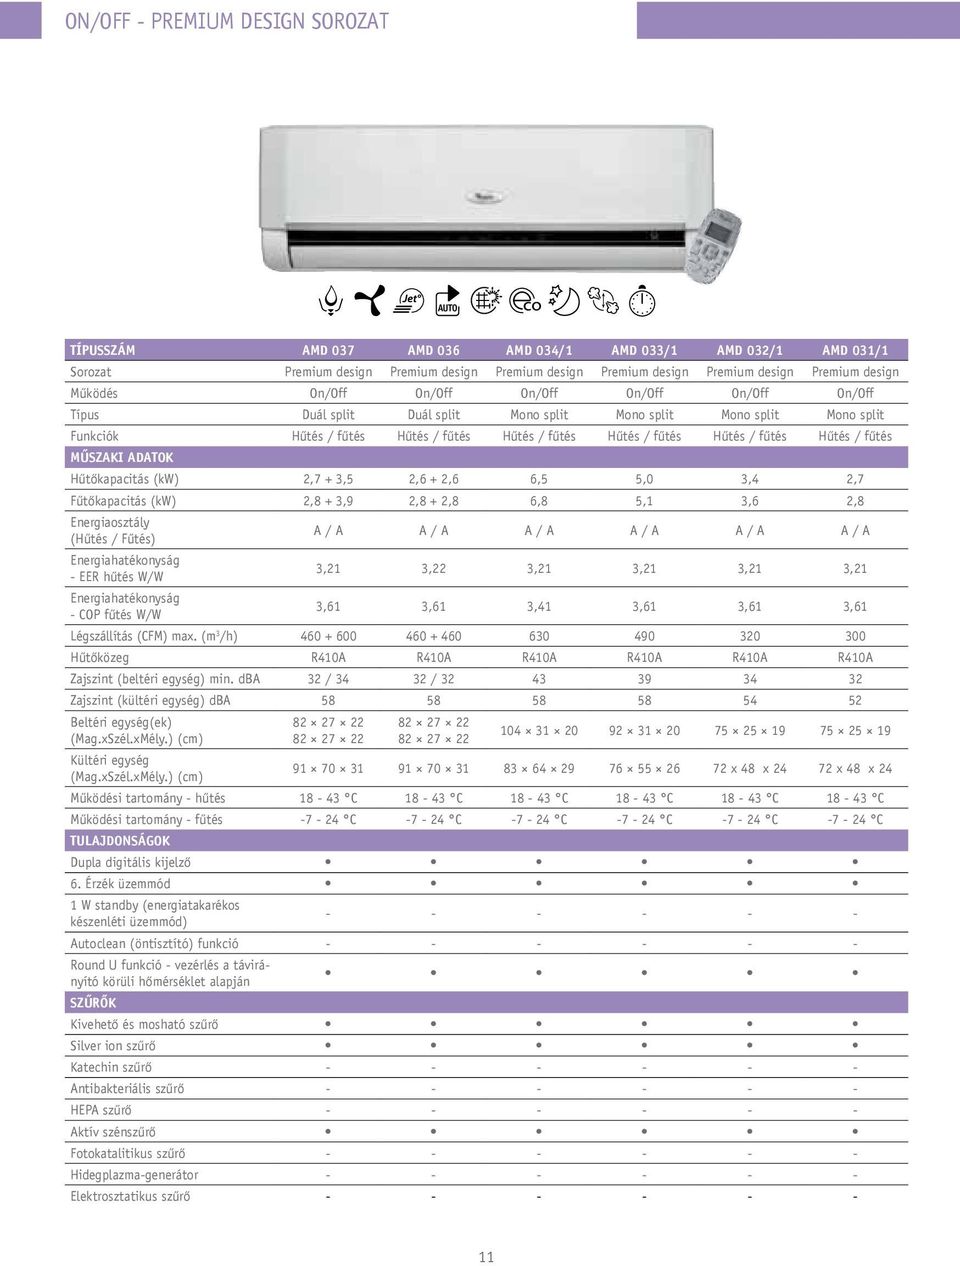 WHIRLPOOL. Légkondicionáló készülékek 2012/2013 GARANCIA - PDF Free Download